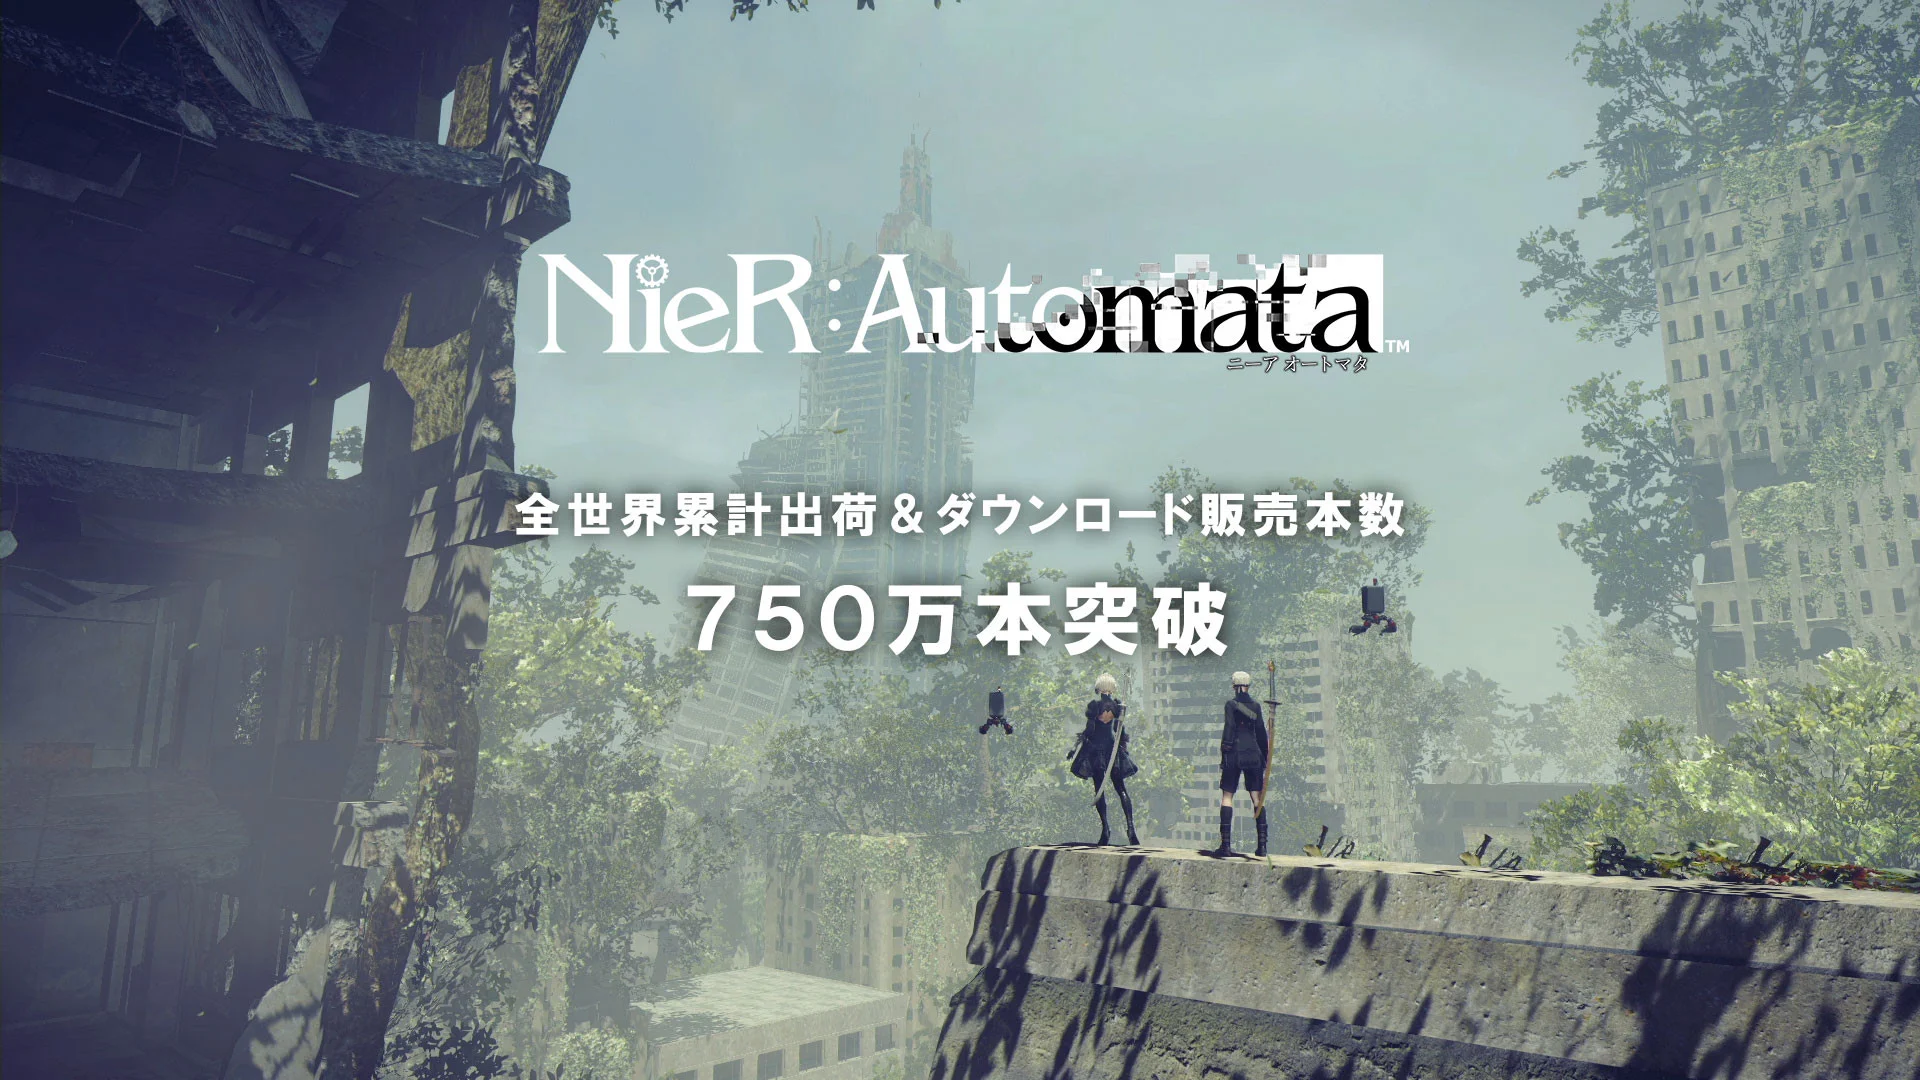 Тираж NieR: Automata превысил 7,5 млн копий по всему миру - фото 1